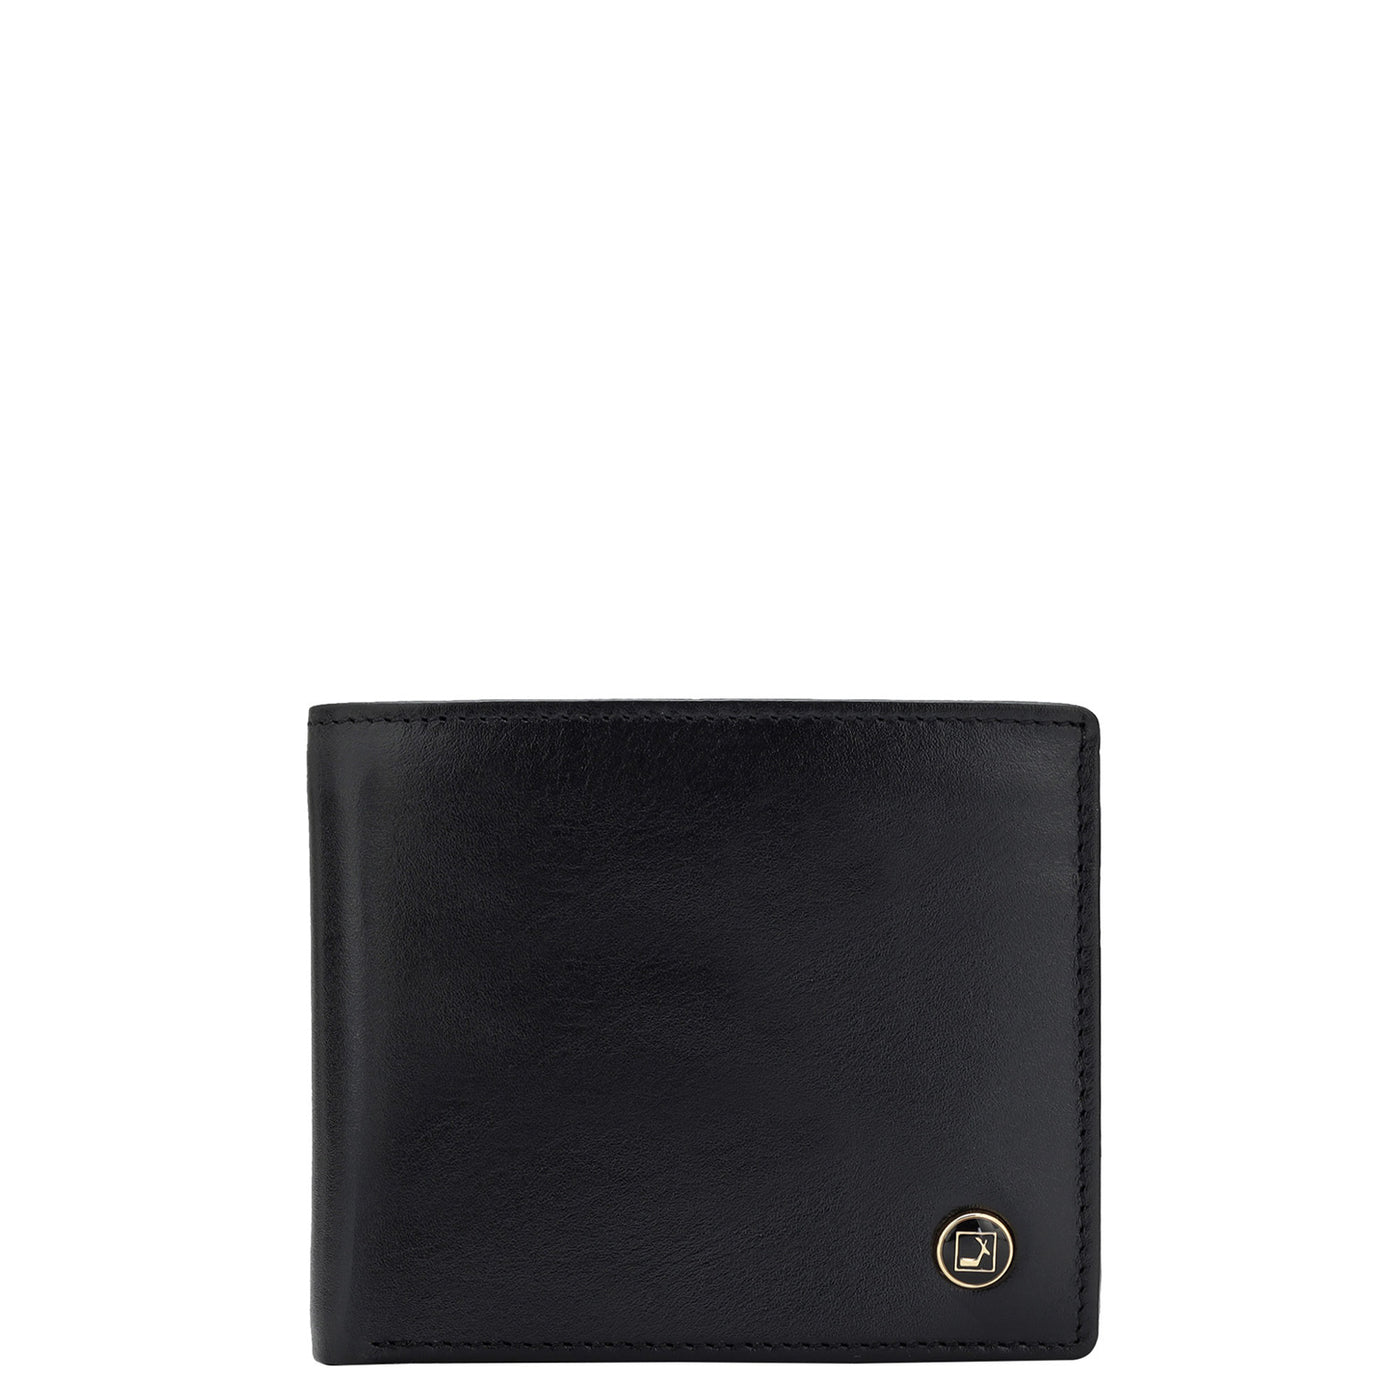 Plain Leather Mens Wallet - Black